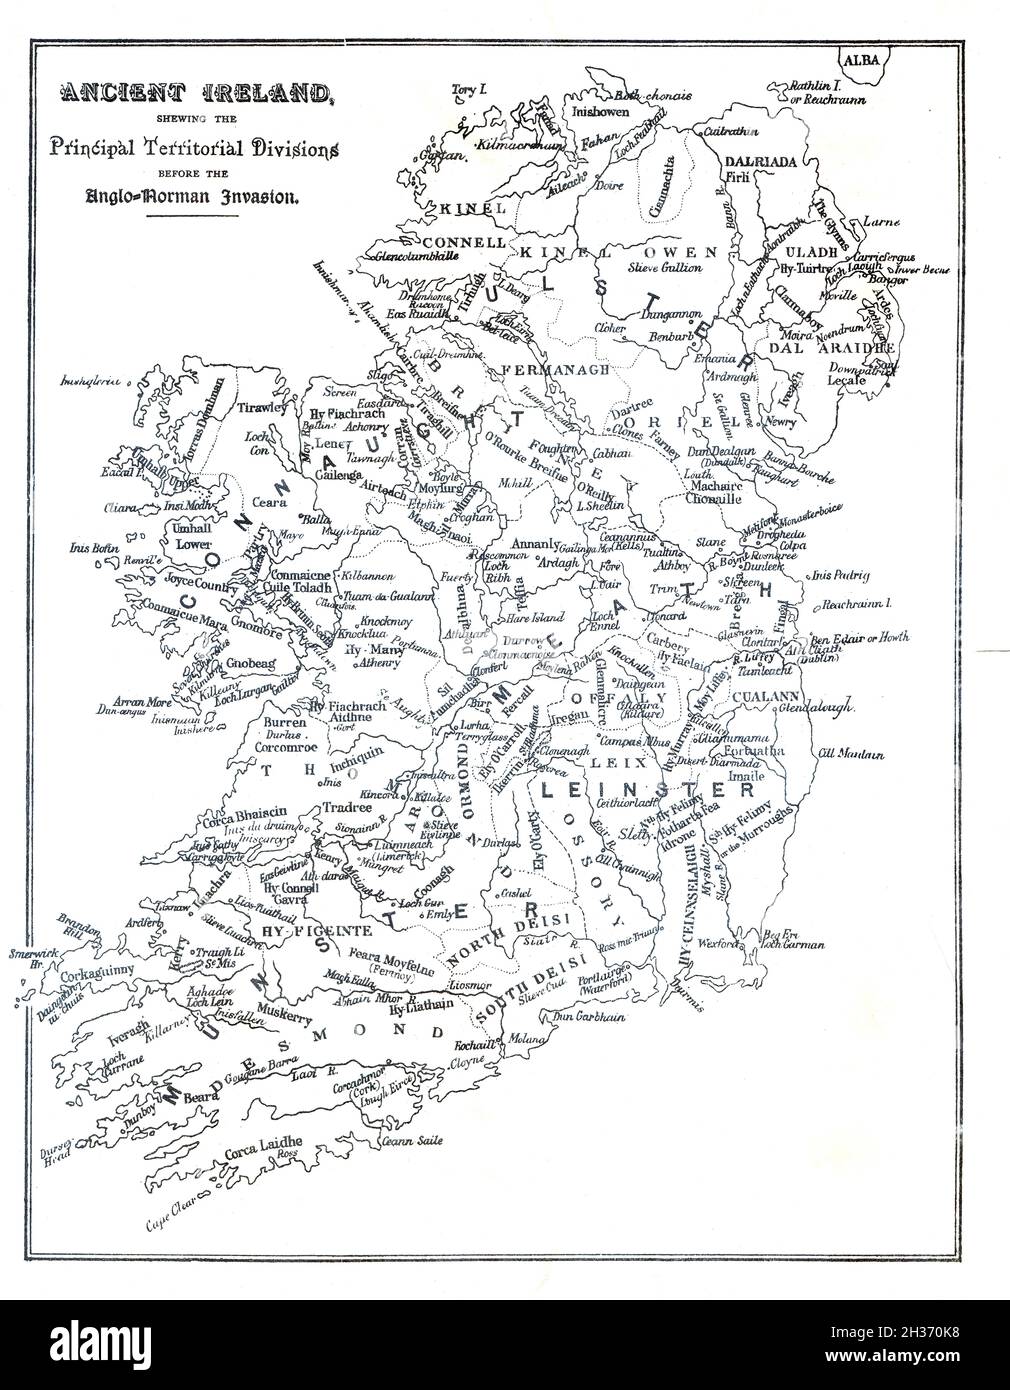 Carte de l'Irlande,avant l'invasion anglo-normande montrant les clans, les septs et les divisions territoriales Banque D'Images